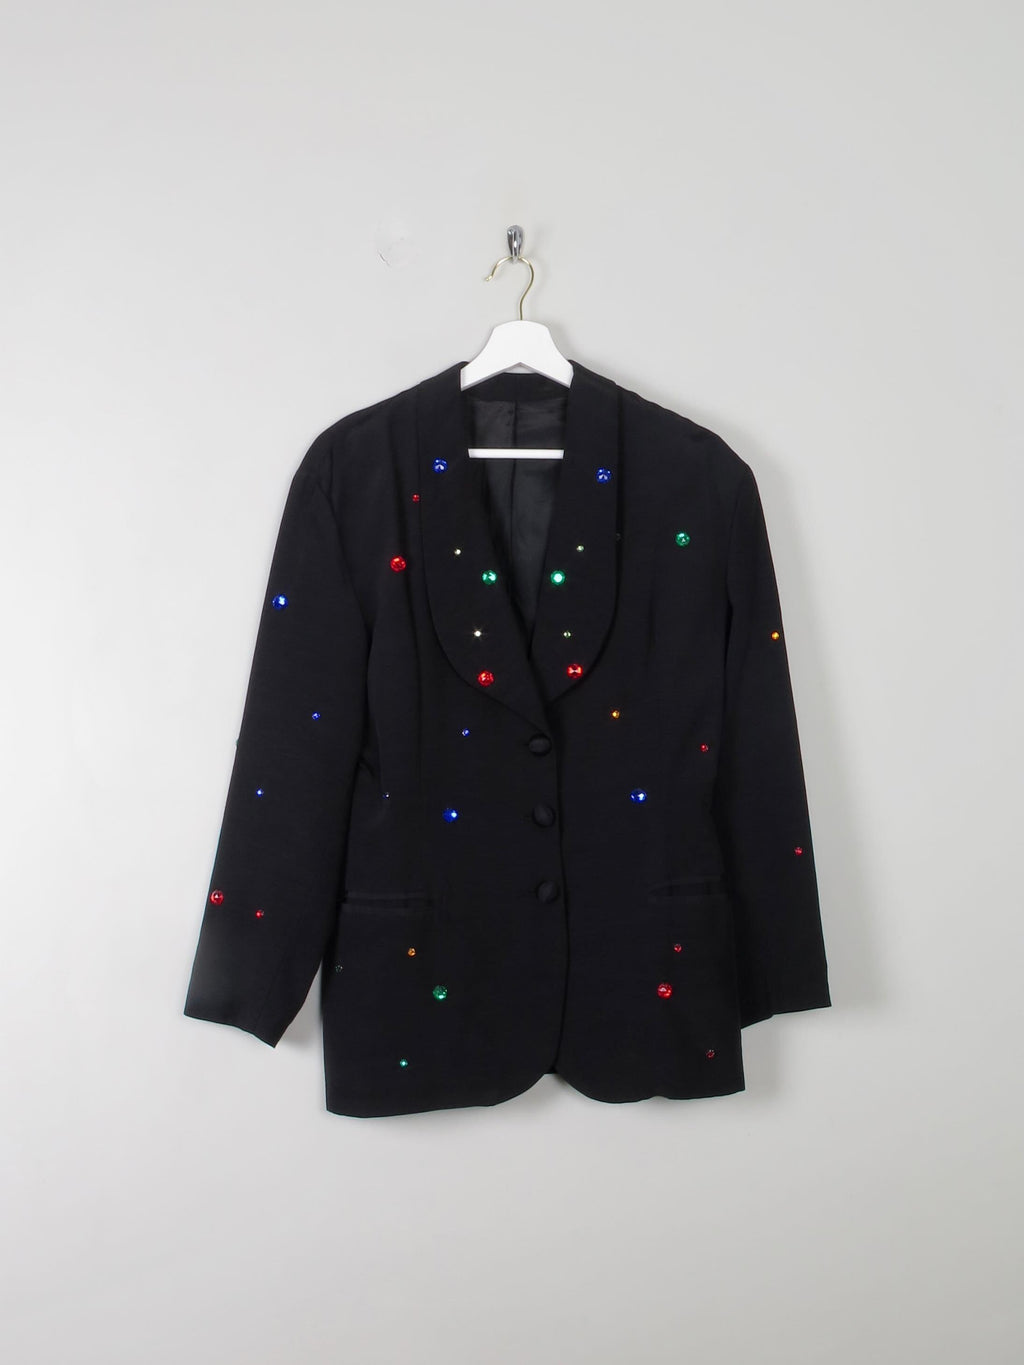 Women's Black & Colourful Embellished Vintage Jacket S - The Harlequin